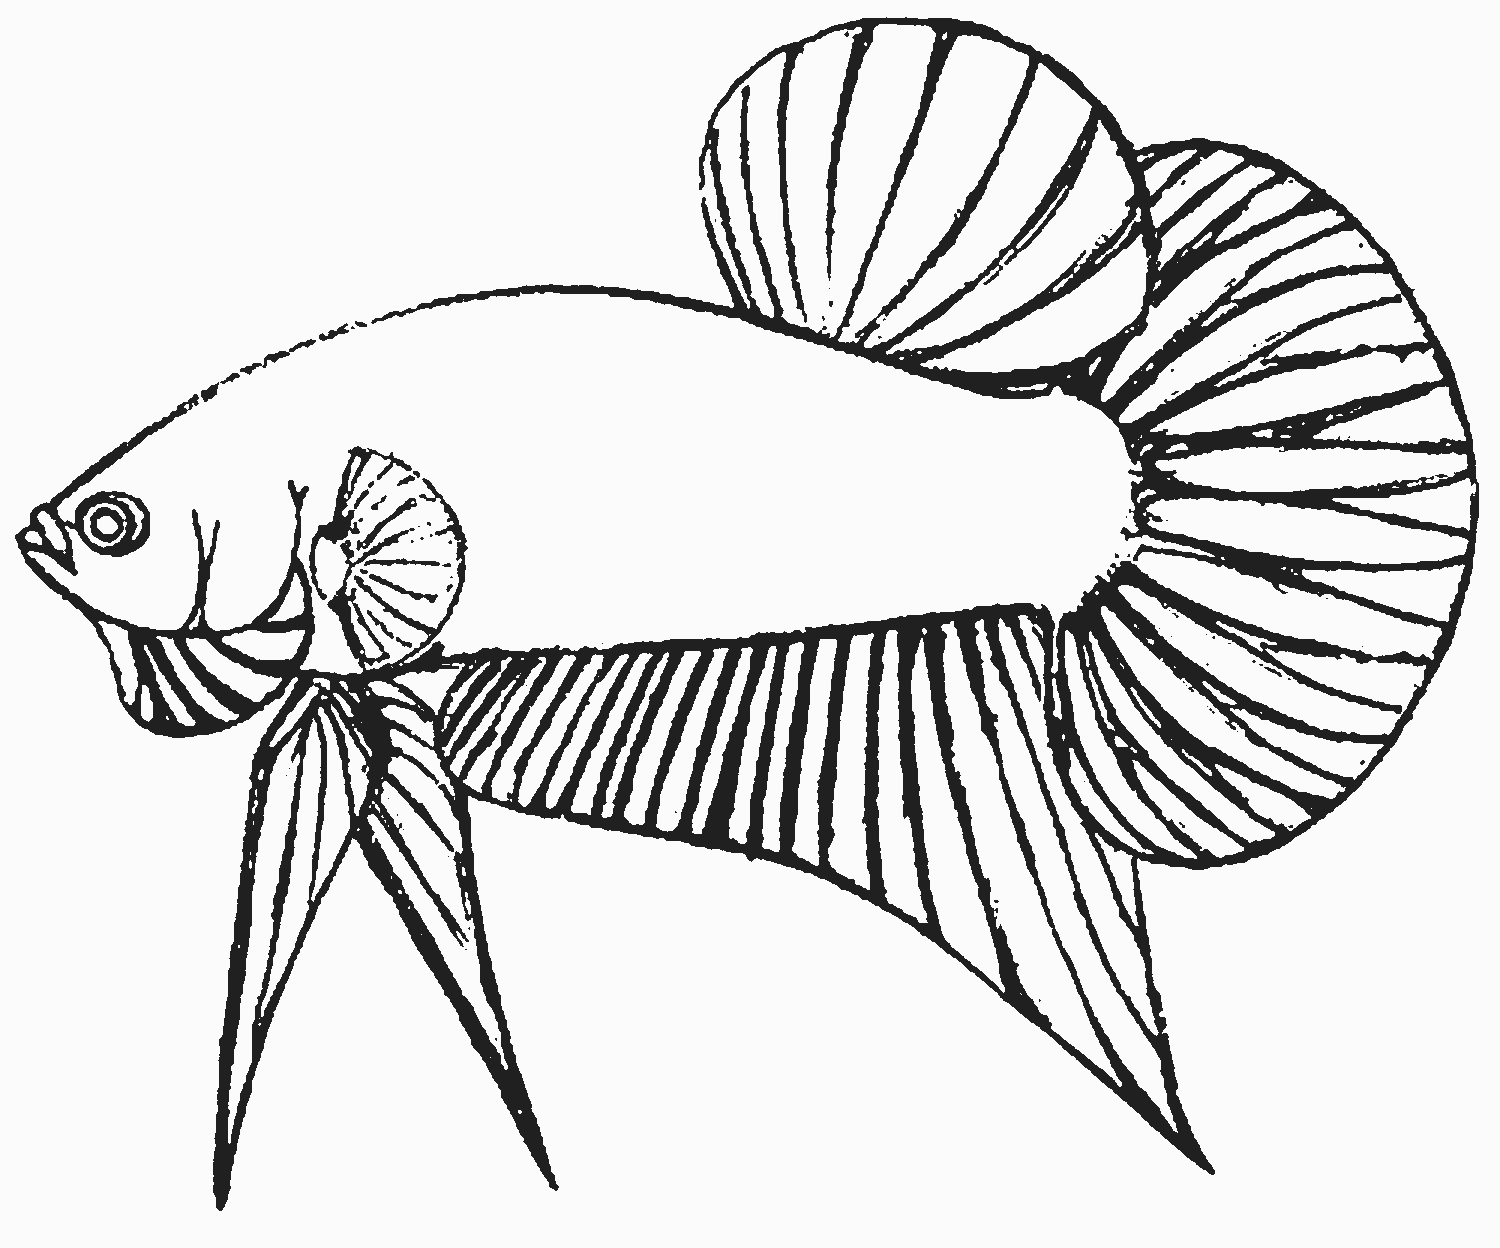 Contoh Sketsa Gambar Ikan - Corned Wall